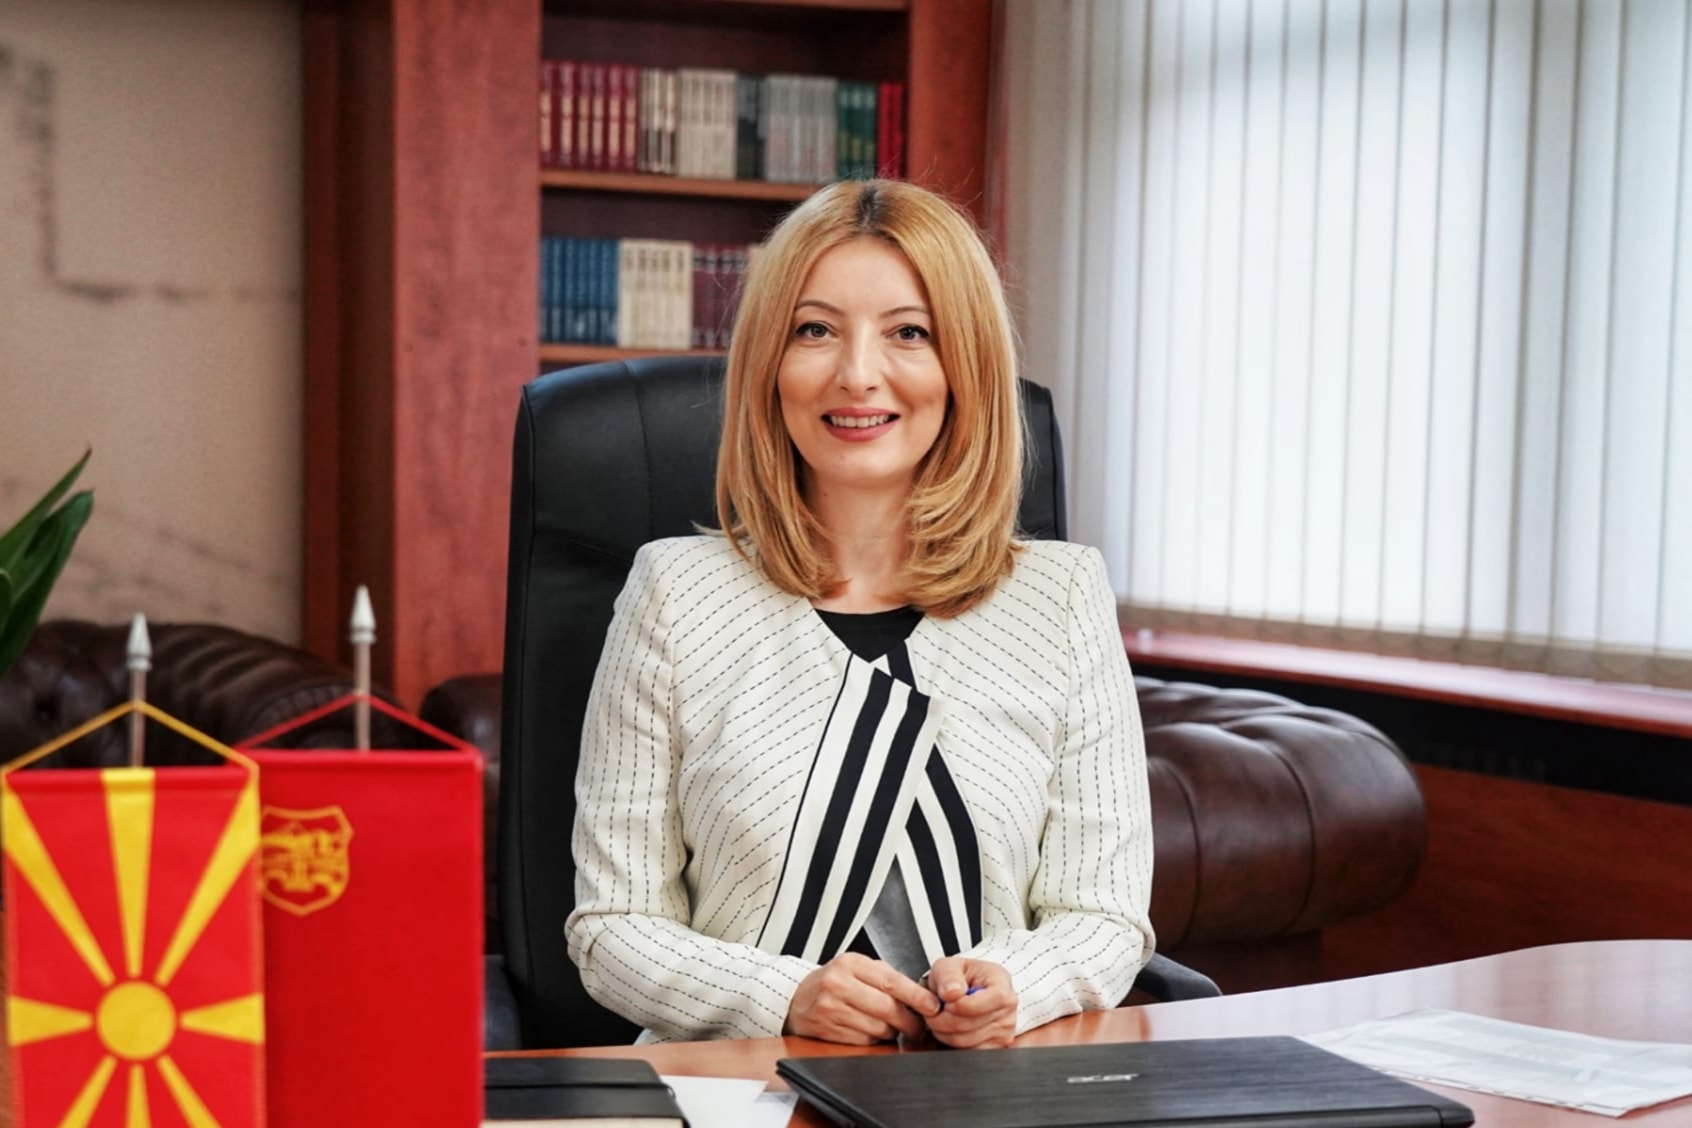 Данела Арсовска денеска седна во градоначалничката фотелја